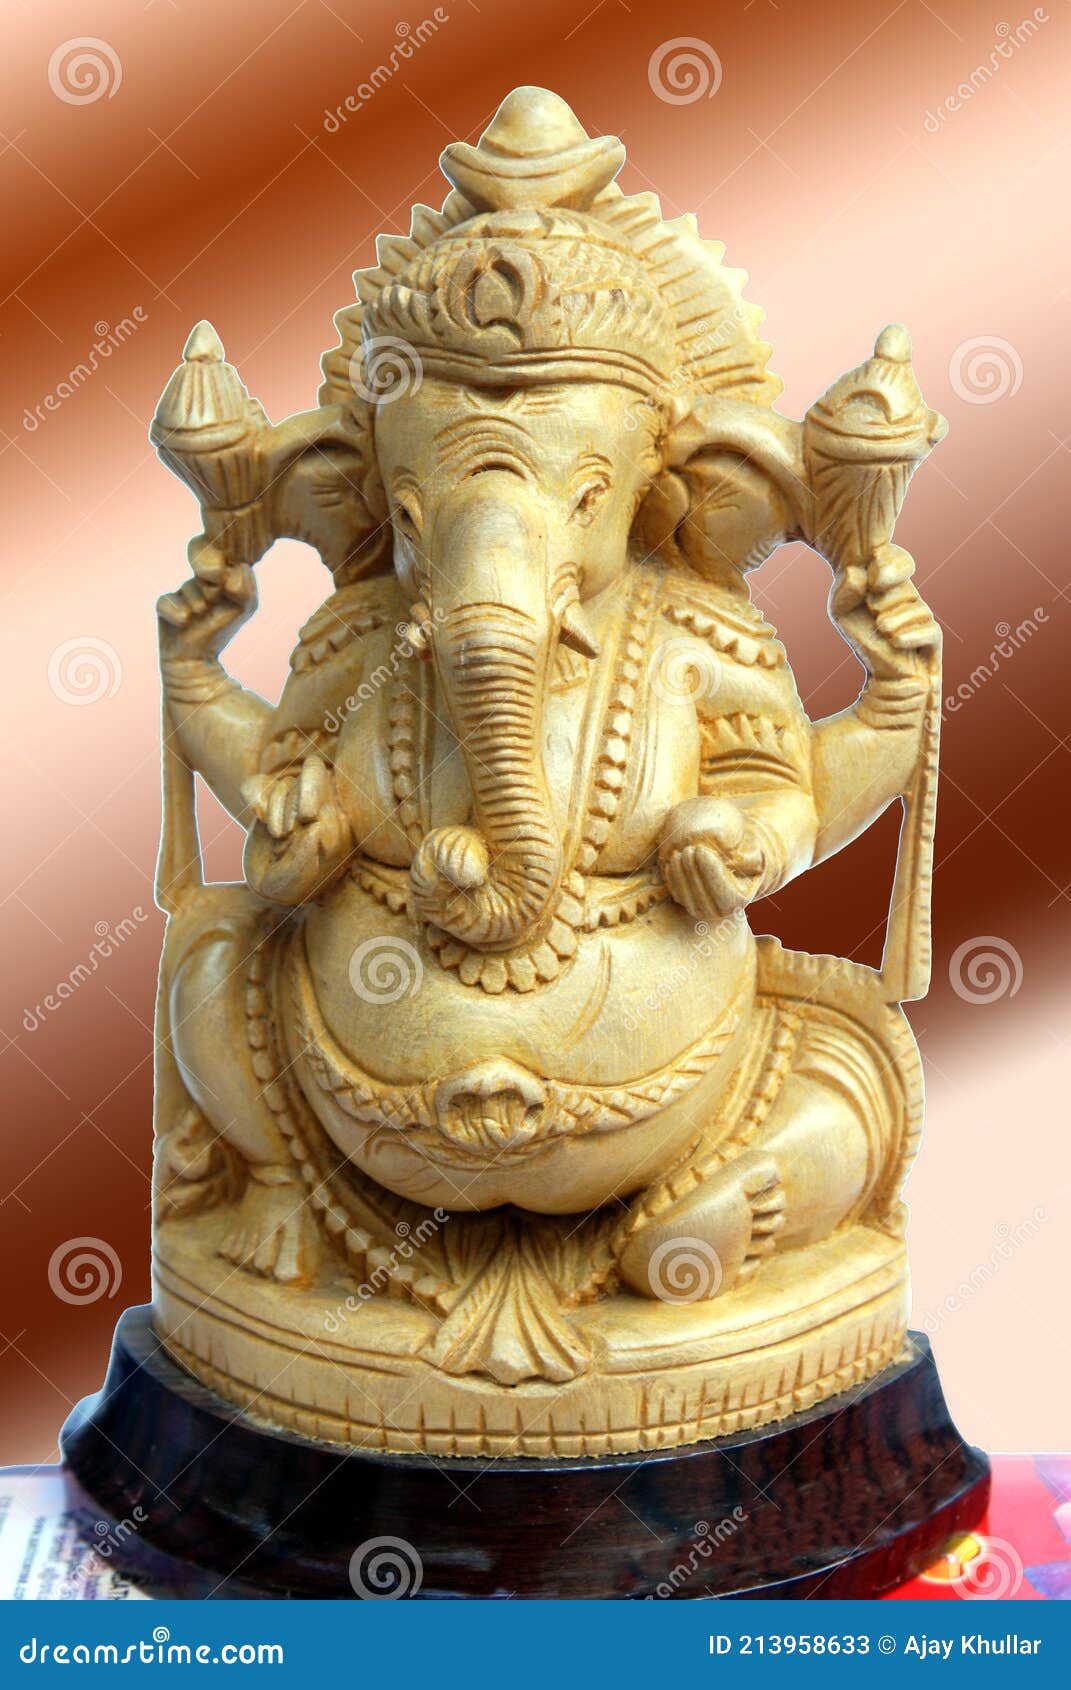 The Hindu God Ganesha Statue Stock Image - Image of stone ...